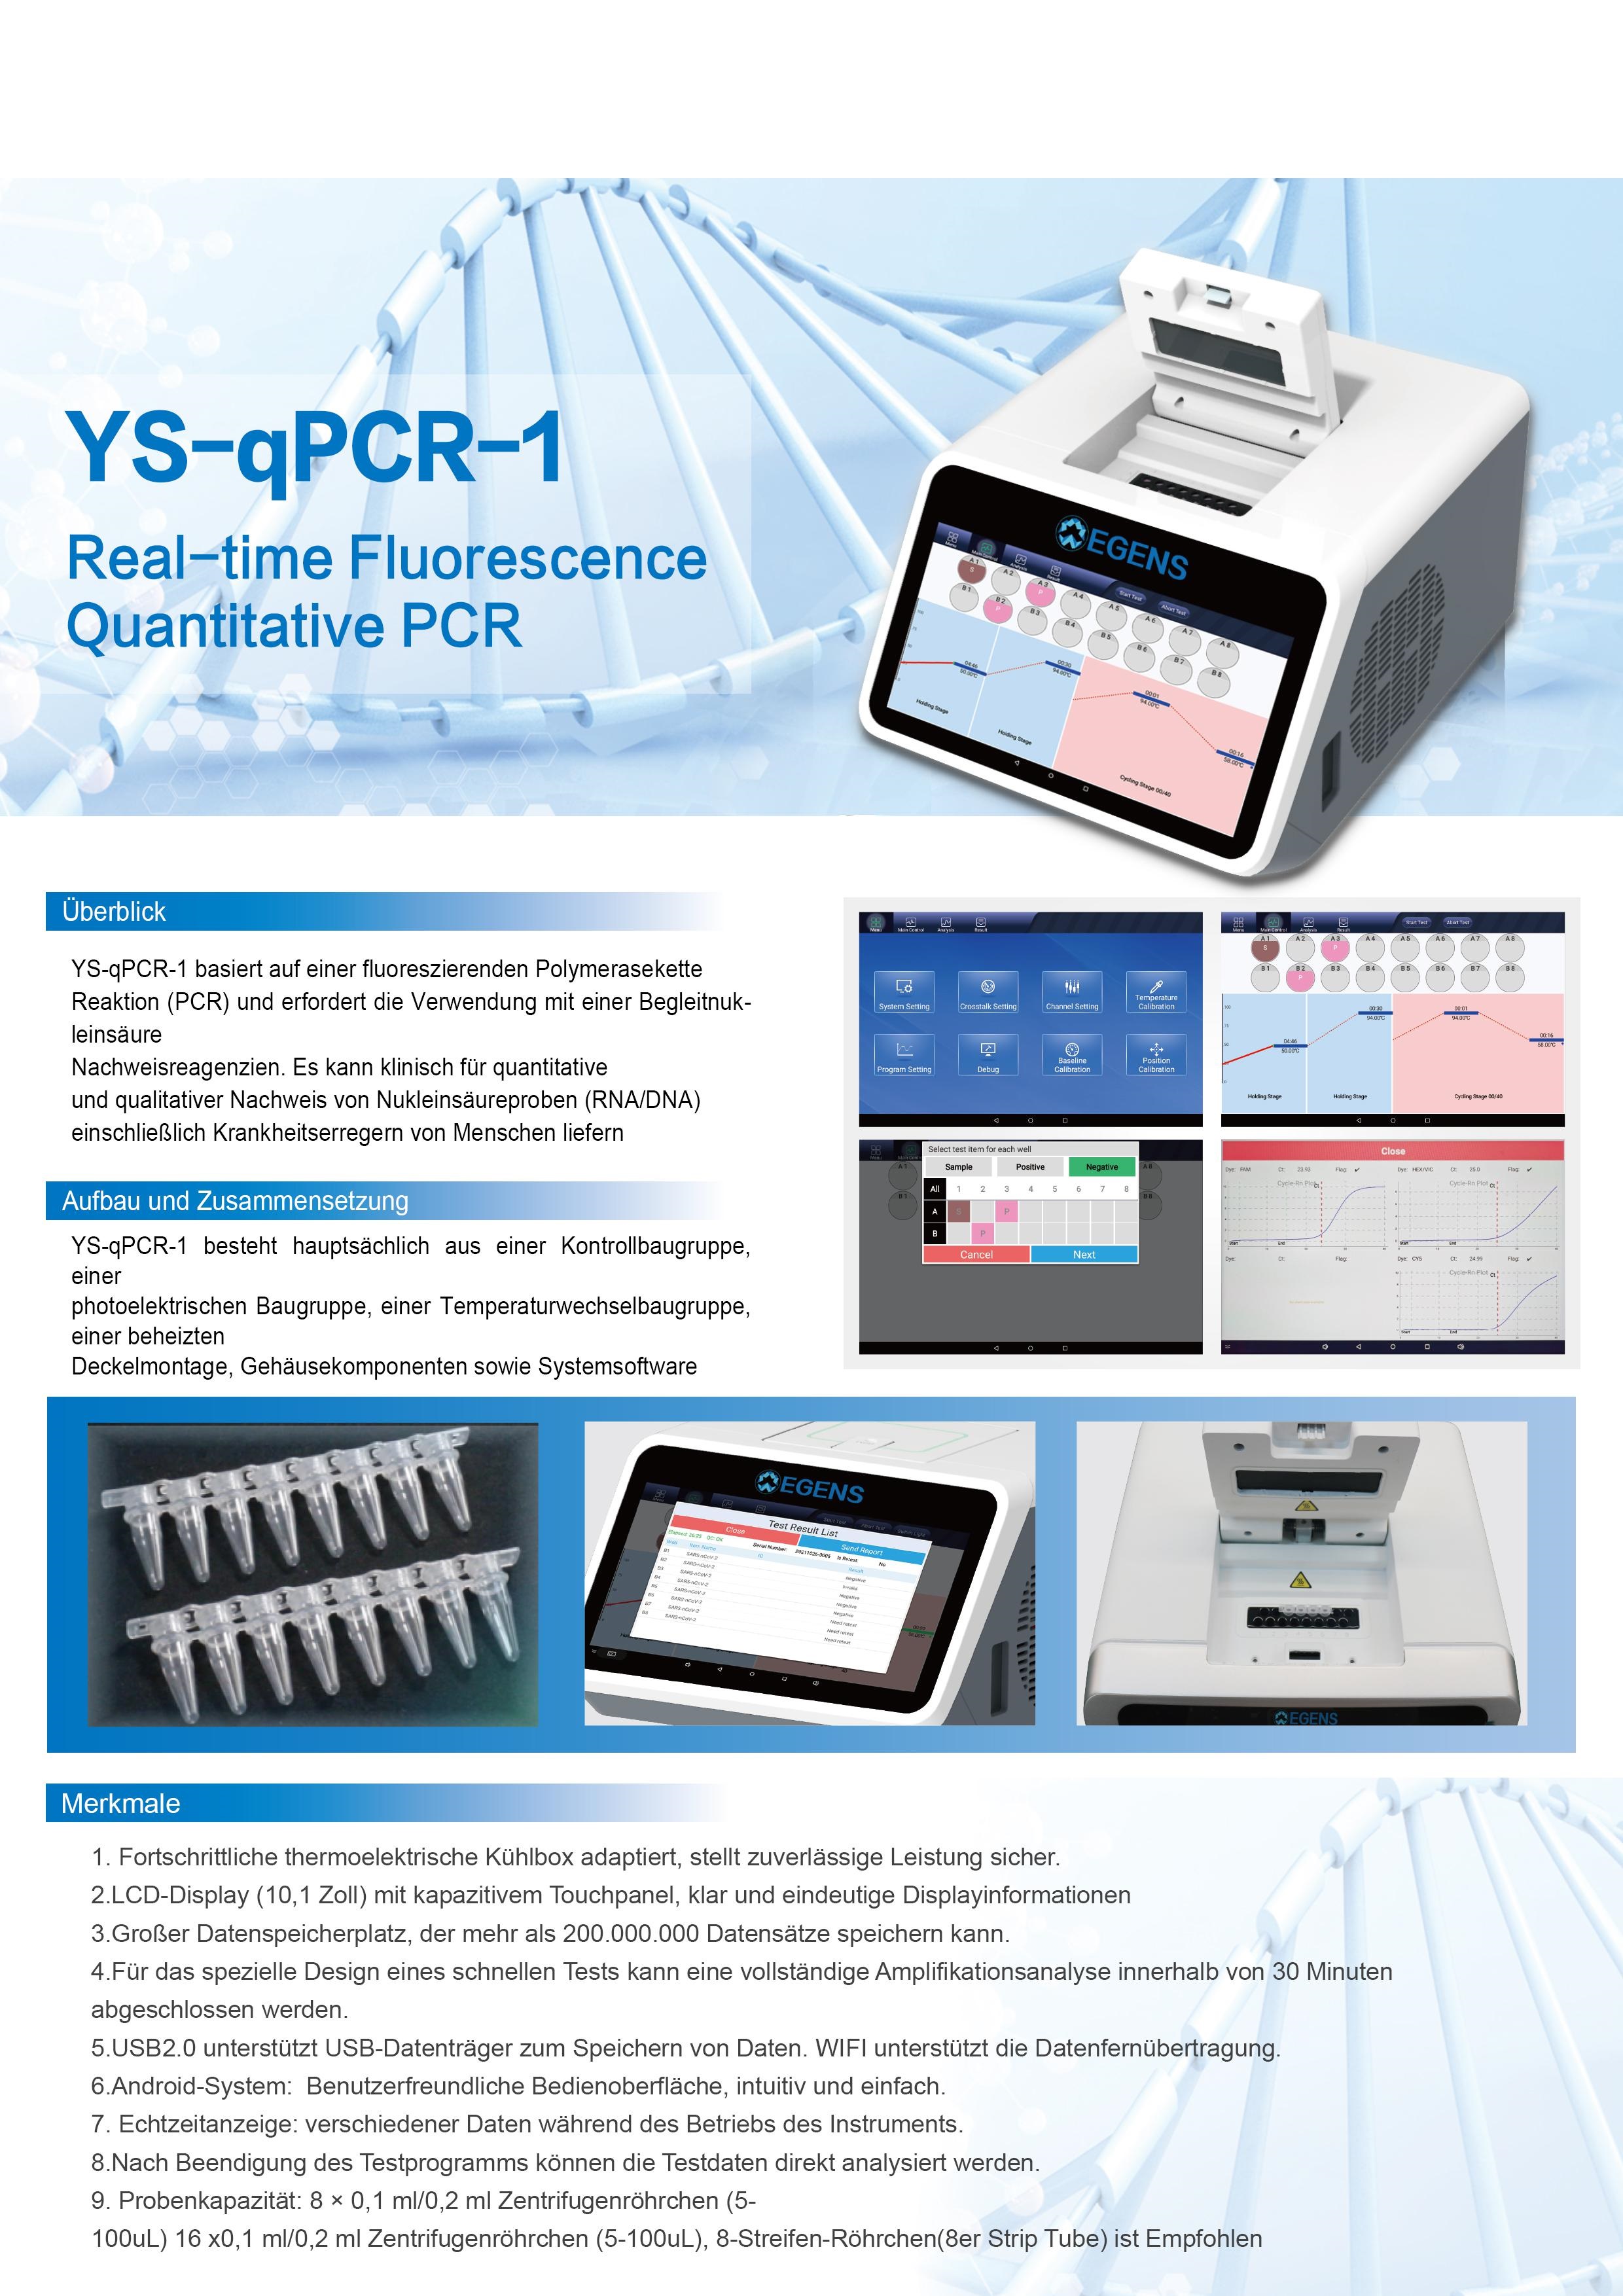          POC PCR Egens® Real-time Fluorescence Quantitative PCR(YS-Qpcr-1) Equipment